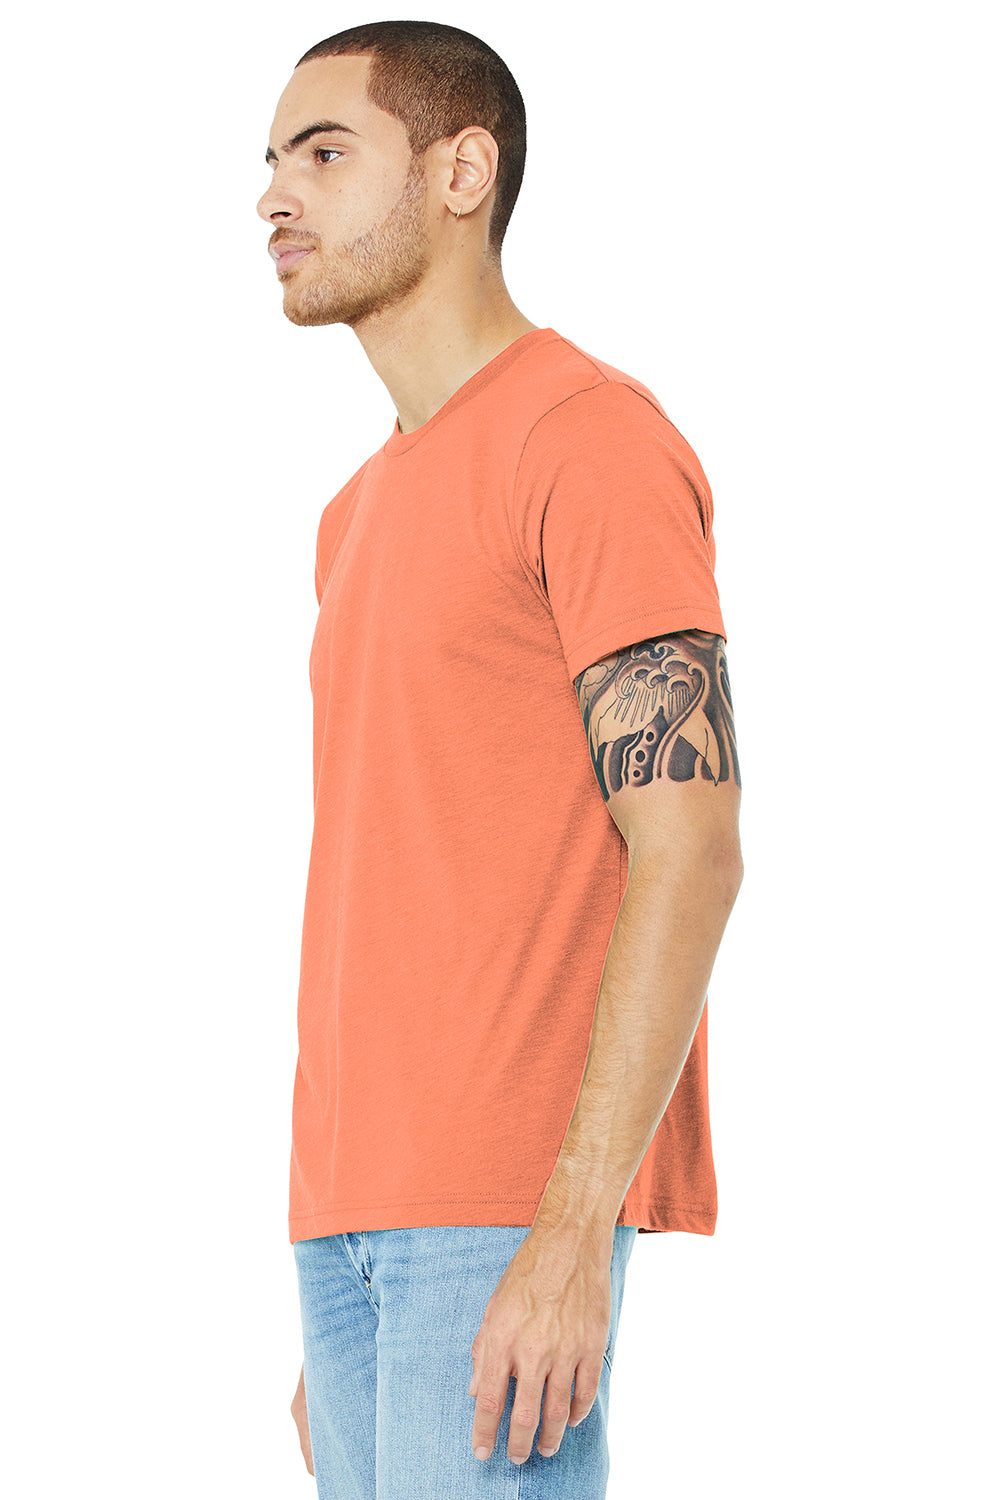 Bella + Canvas BC3413/3413C/3413 Mens Short Sleeve Crewneck T-Shirt Orange Model 3Q